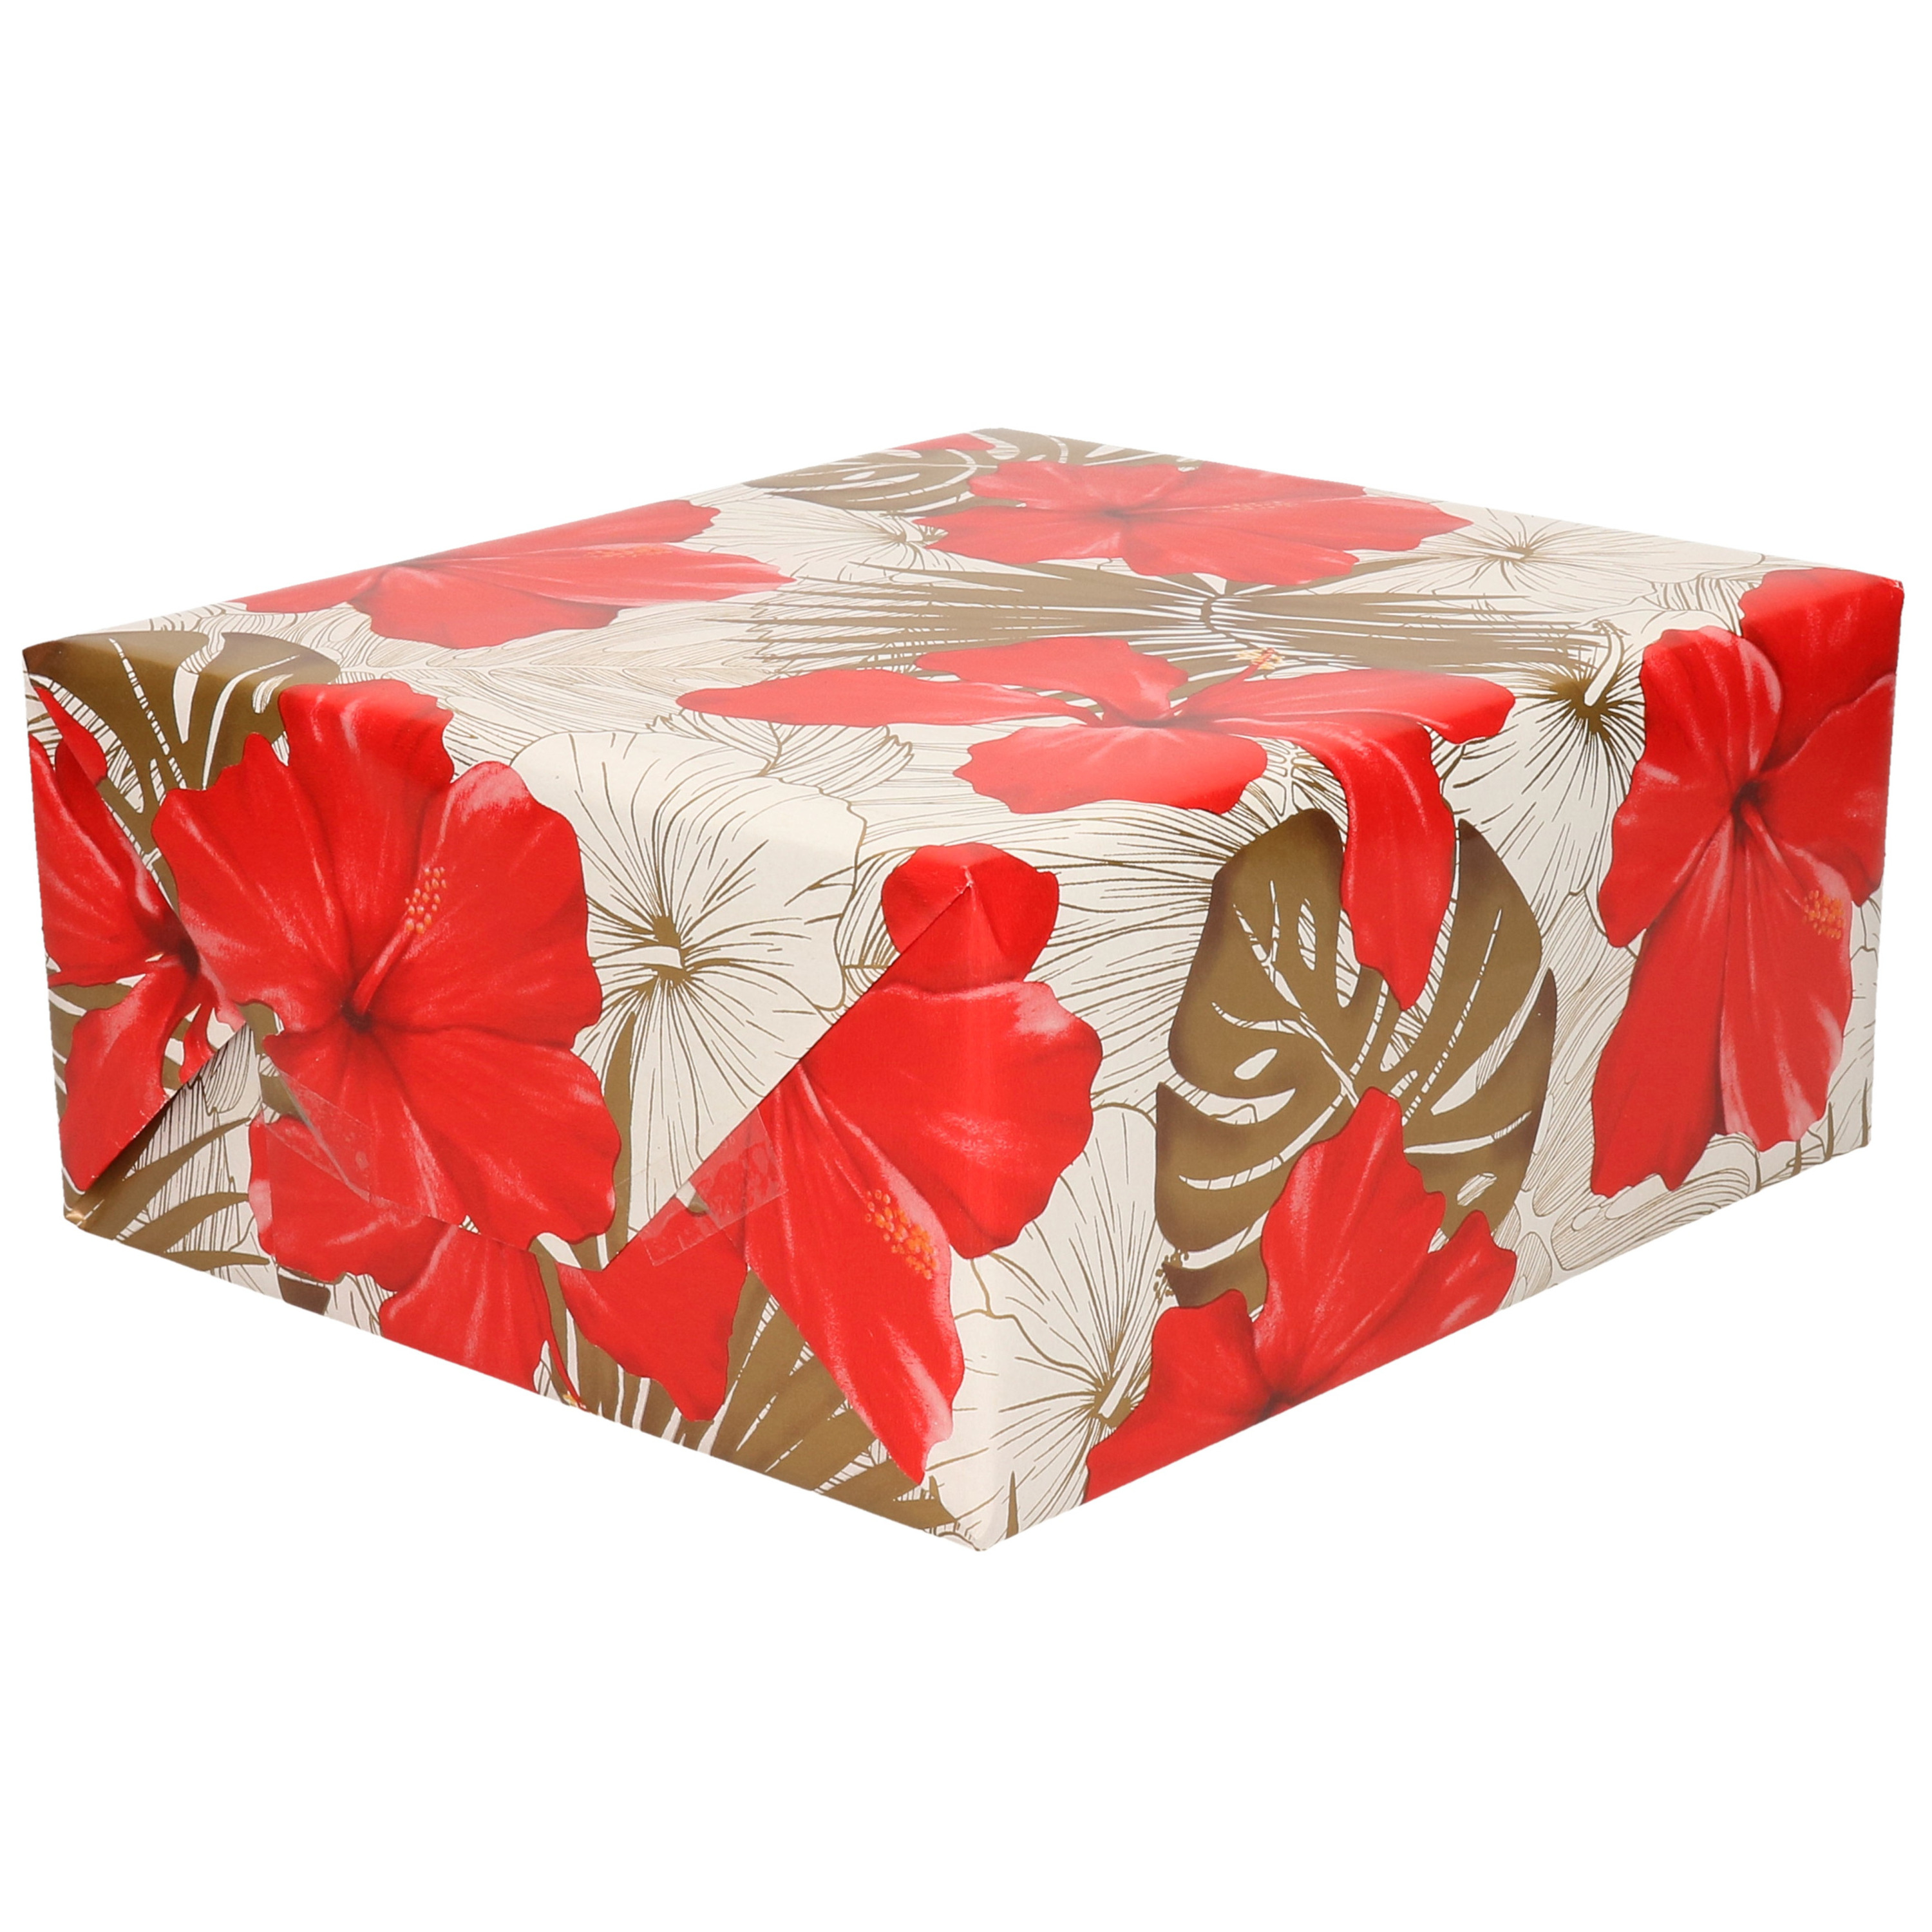 1x Rollen Inpakpapier-cadeaupapier creme met bloemen rood en goud 200 x 70 cm